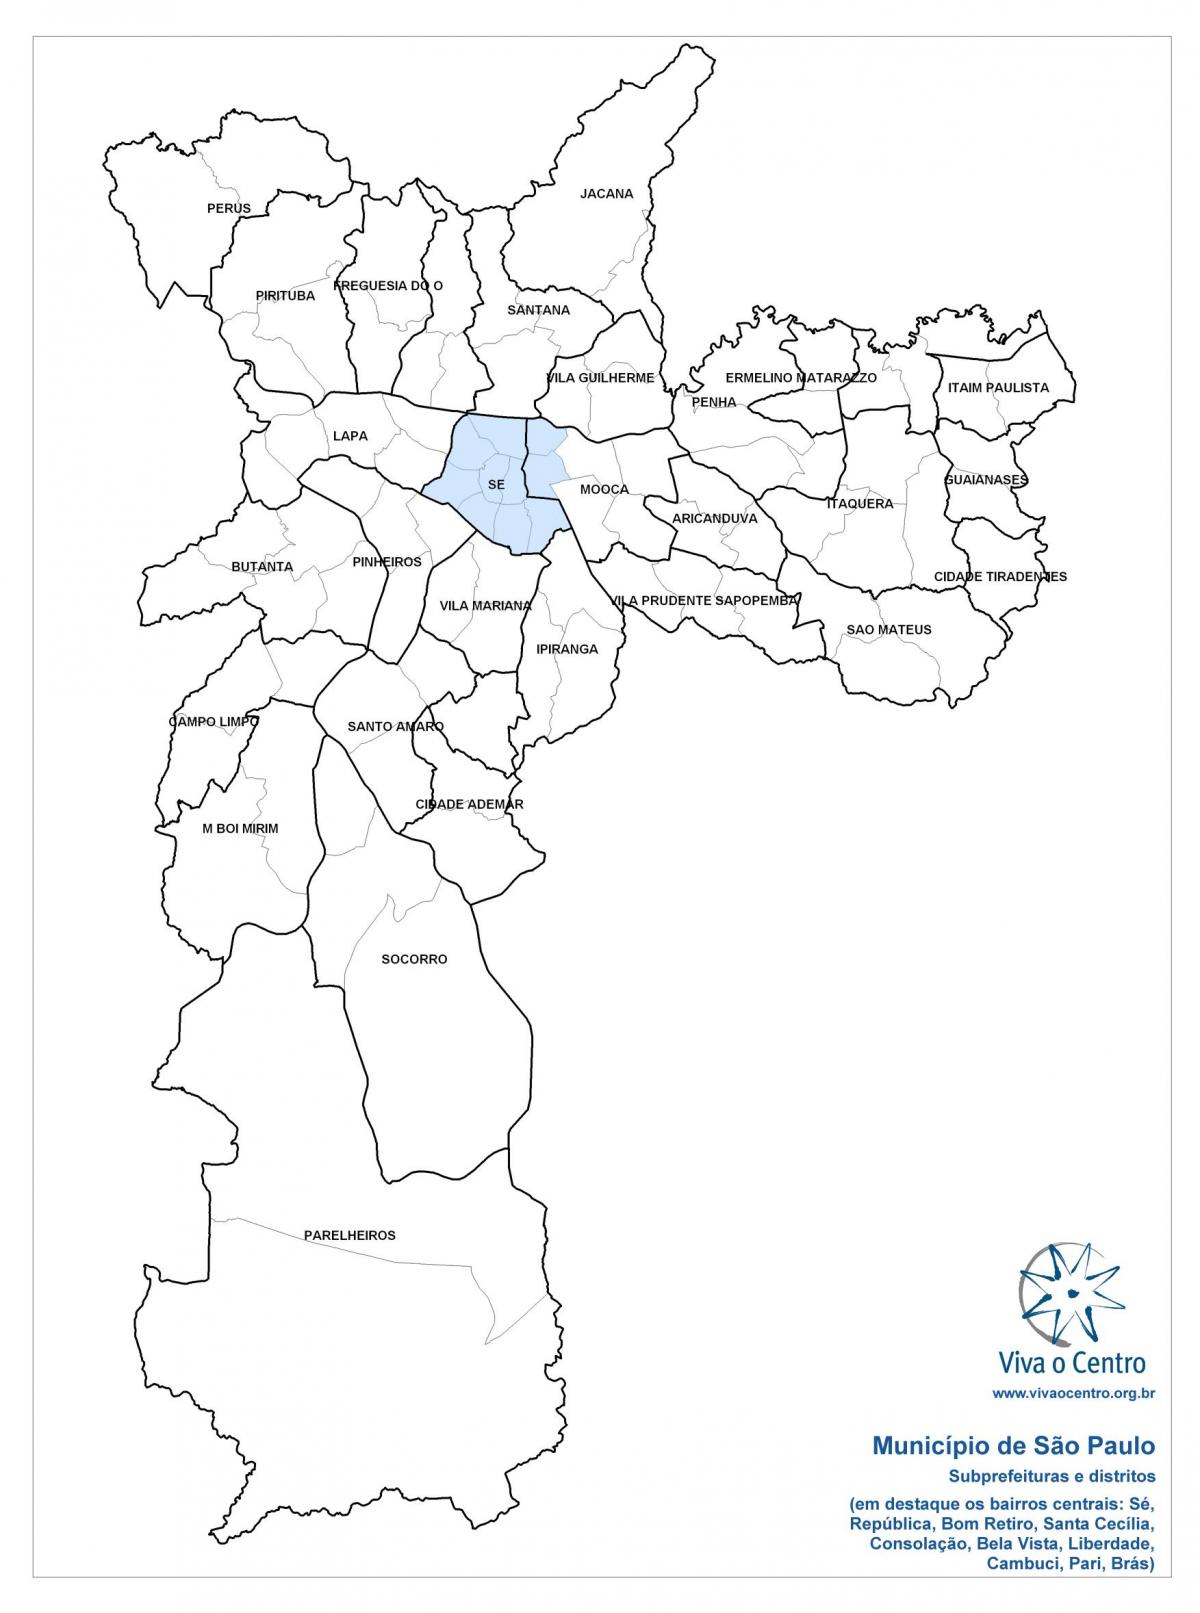 Kart mərkəzi zonasında San Paulo